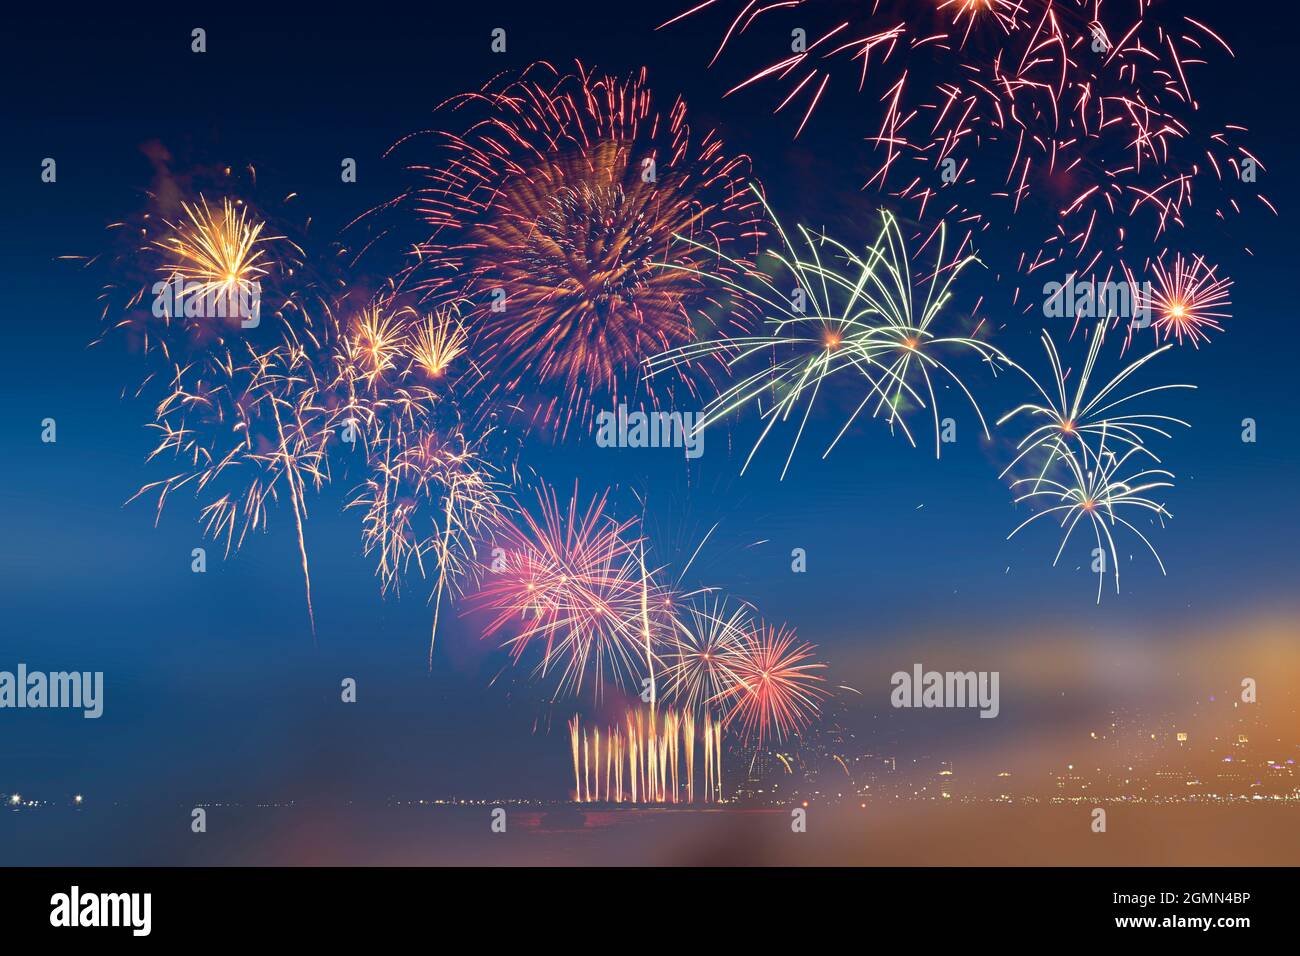 Farbenfrohe Feuerwerksfeier und Hintergrund des Dämmerungshimmels und sanfter Lichtton. Stockfoto